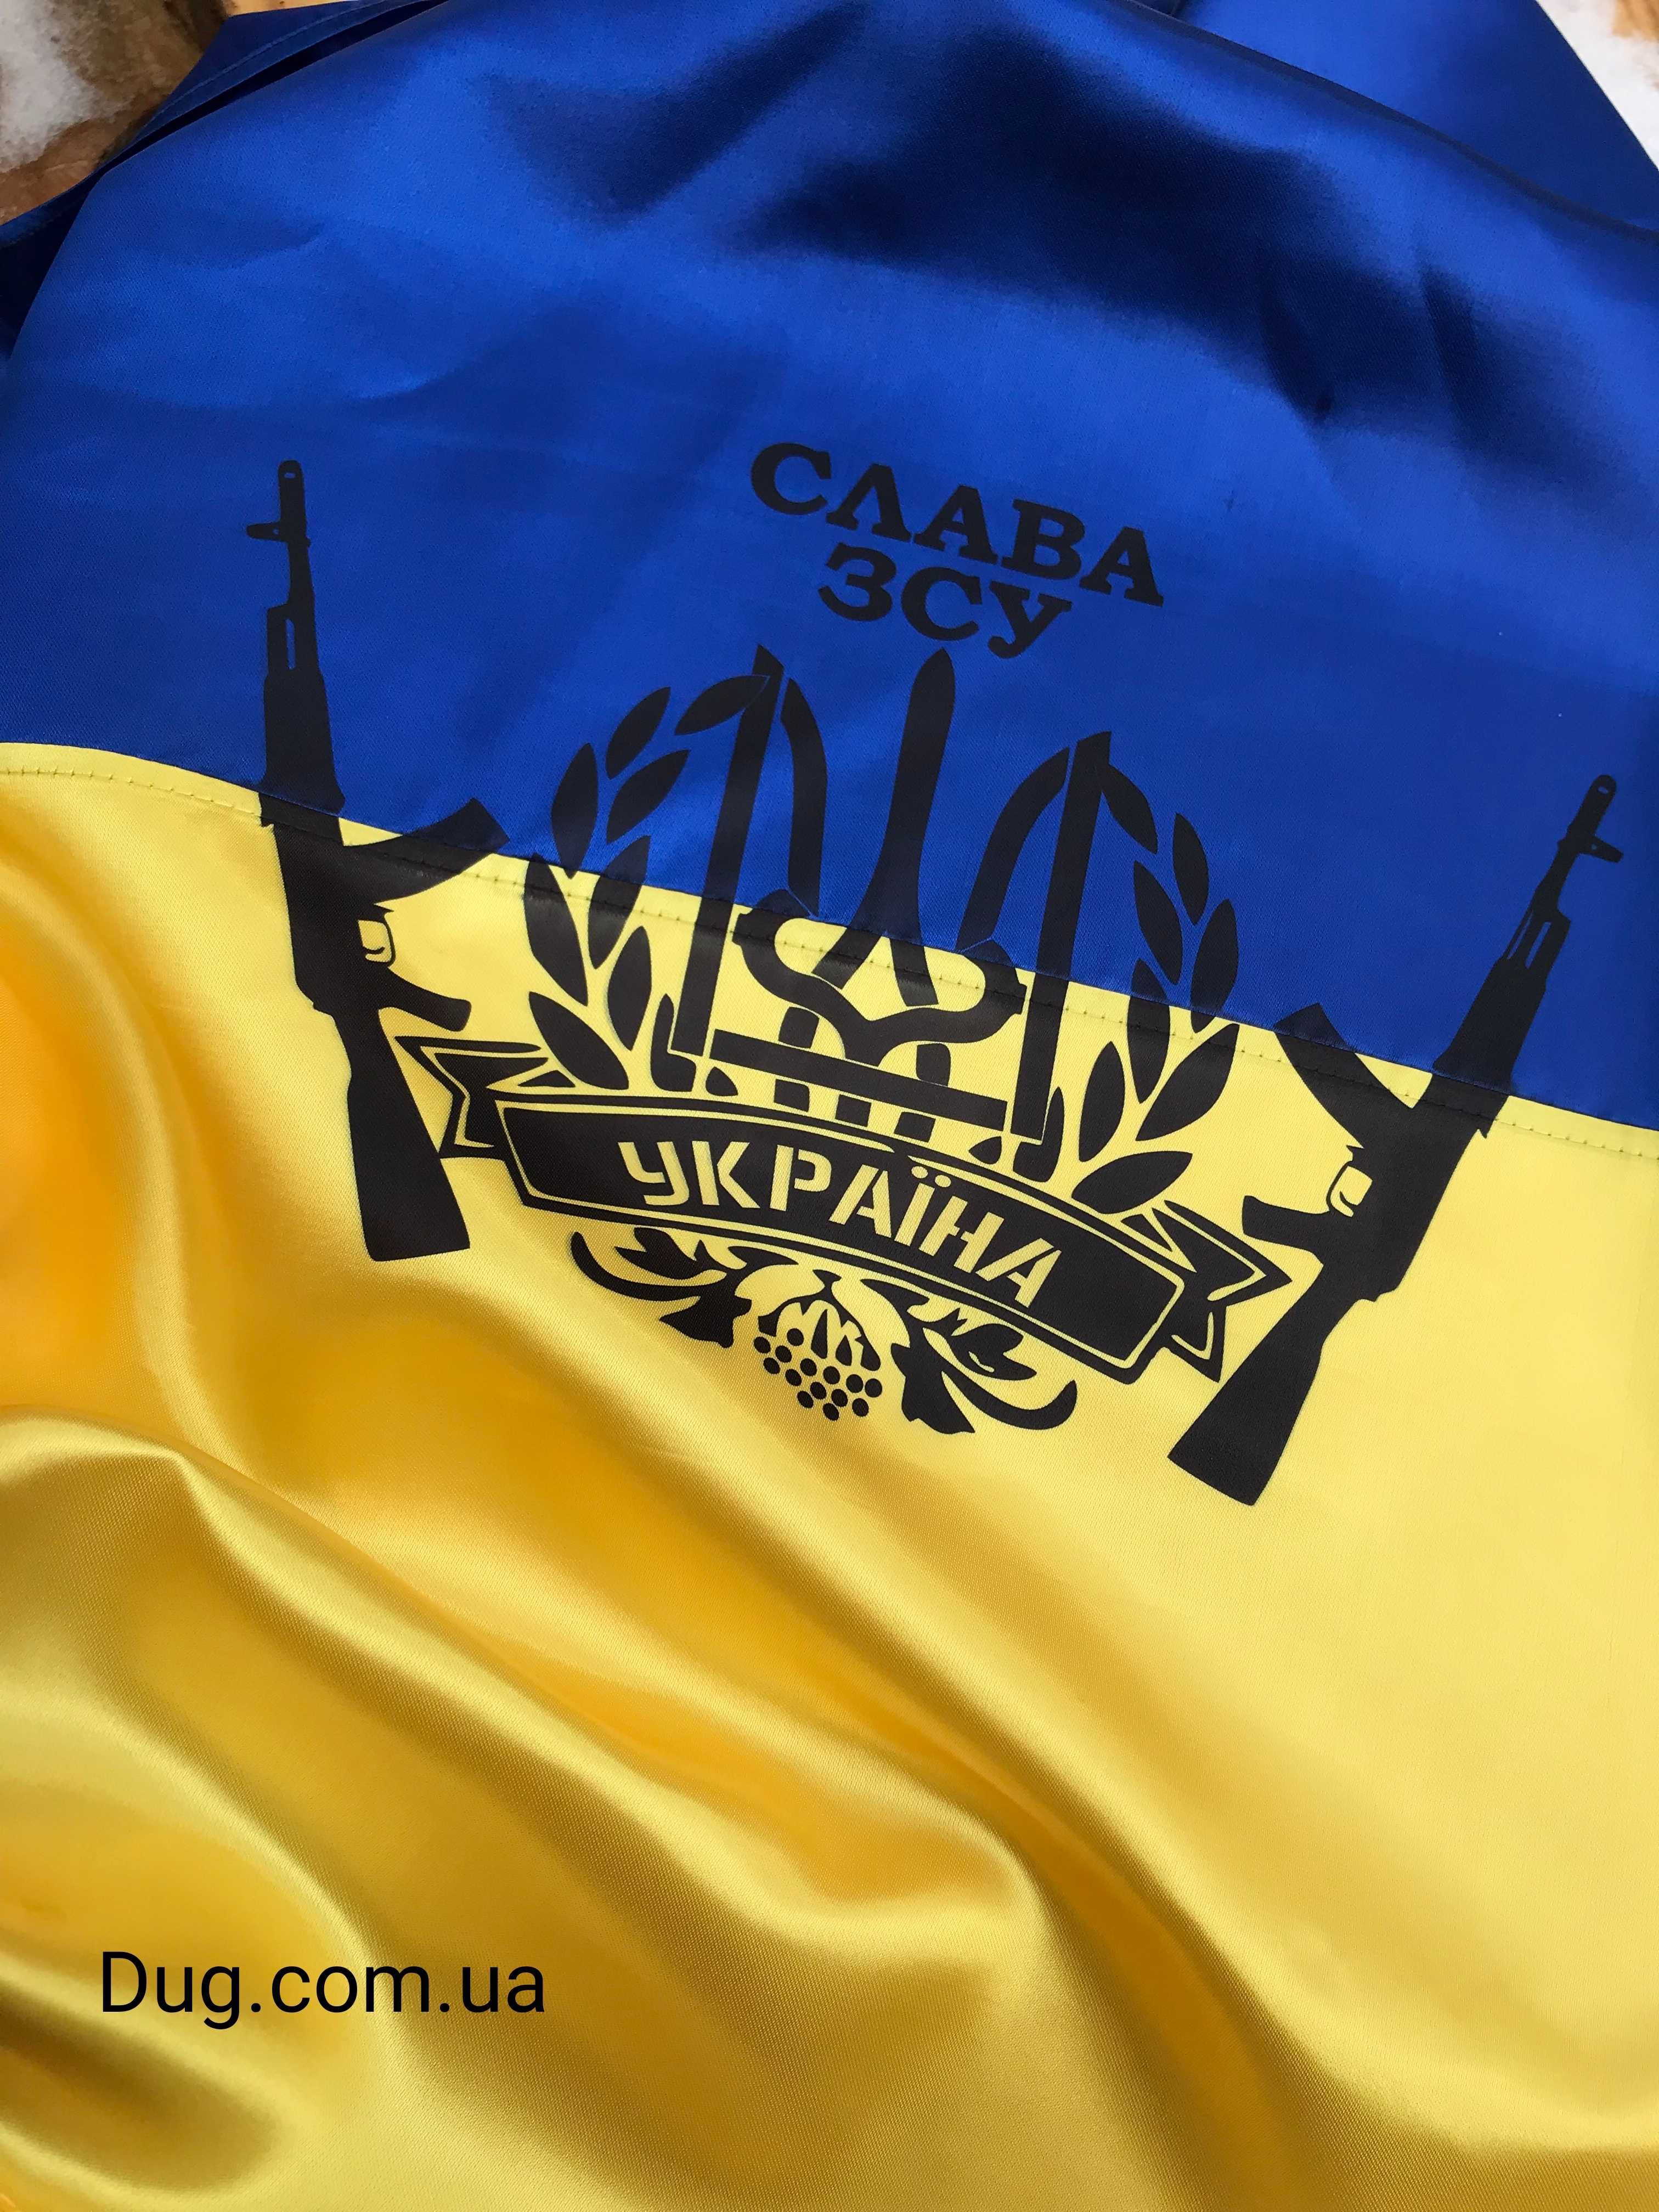 Прапор України|Київ|90×60||Стяг|Флаг Украины купить|Атлас